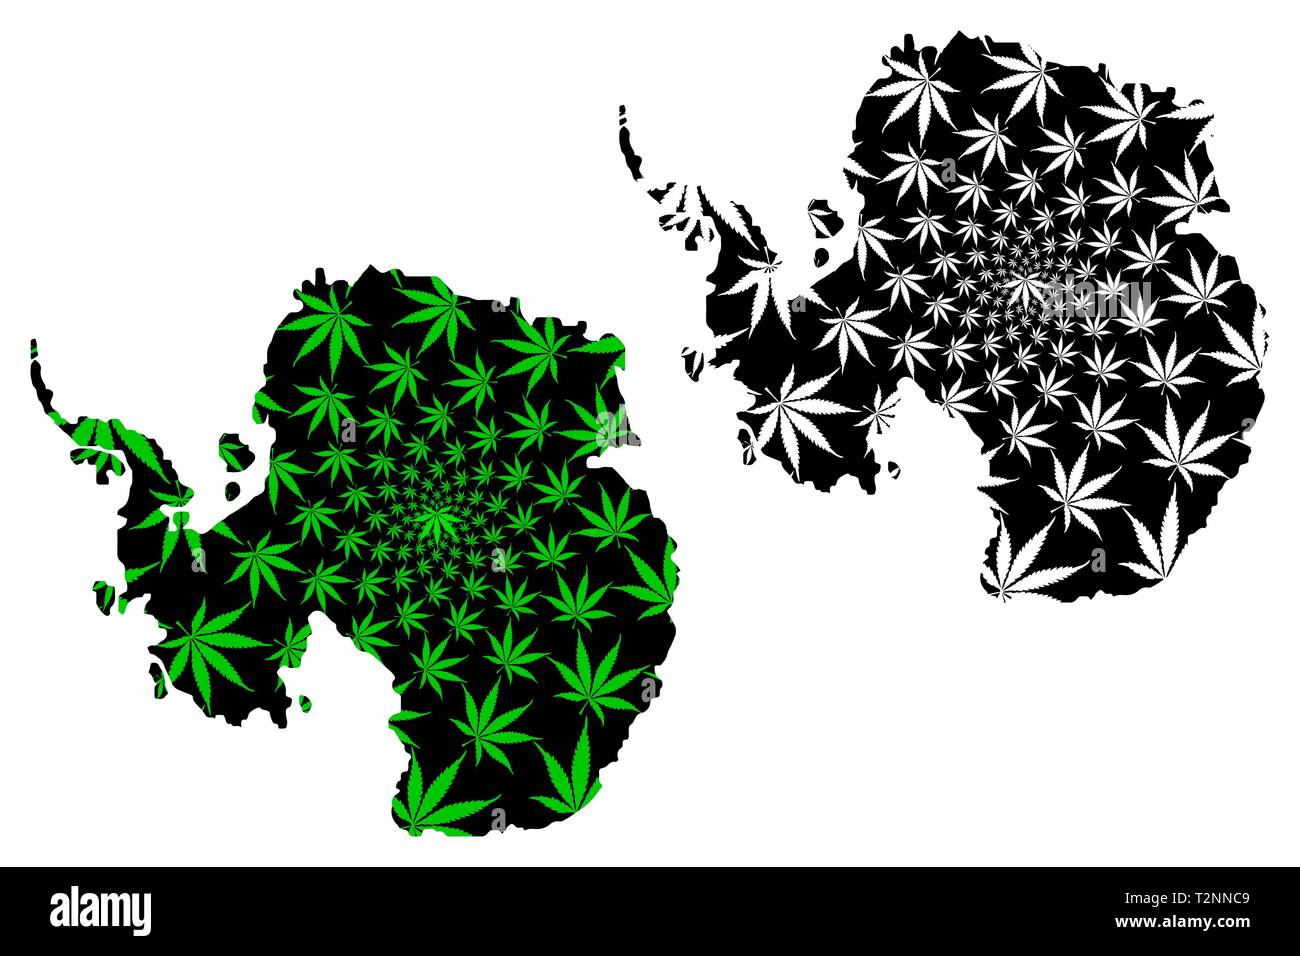 Continent Antarctique - carte feuille de cannabis est vert et noir, Pôle Sud carte de marijuana, THC) feuillage, Illustration de Vecteur